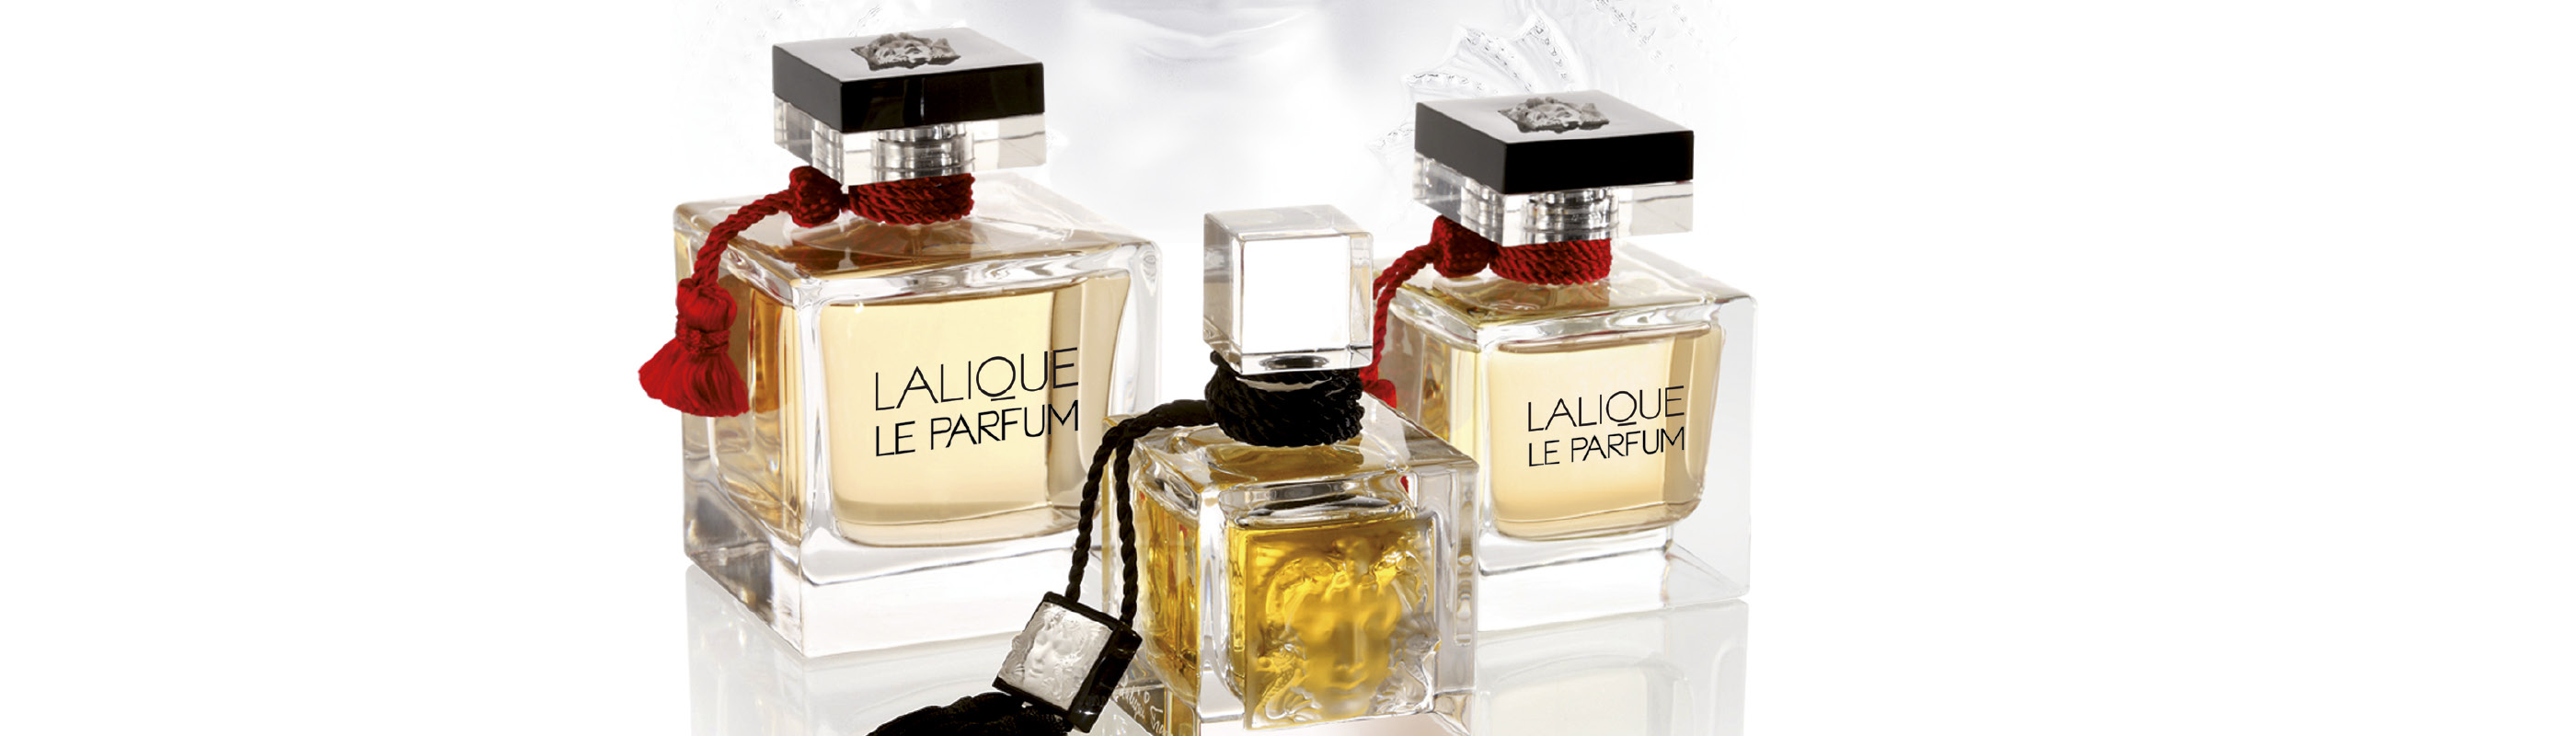 LALIQUE LE PARFUM fragrance | Perfume for women | Lalique Parfums ...